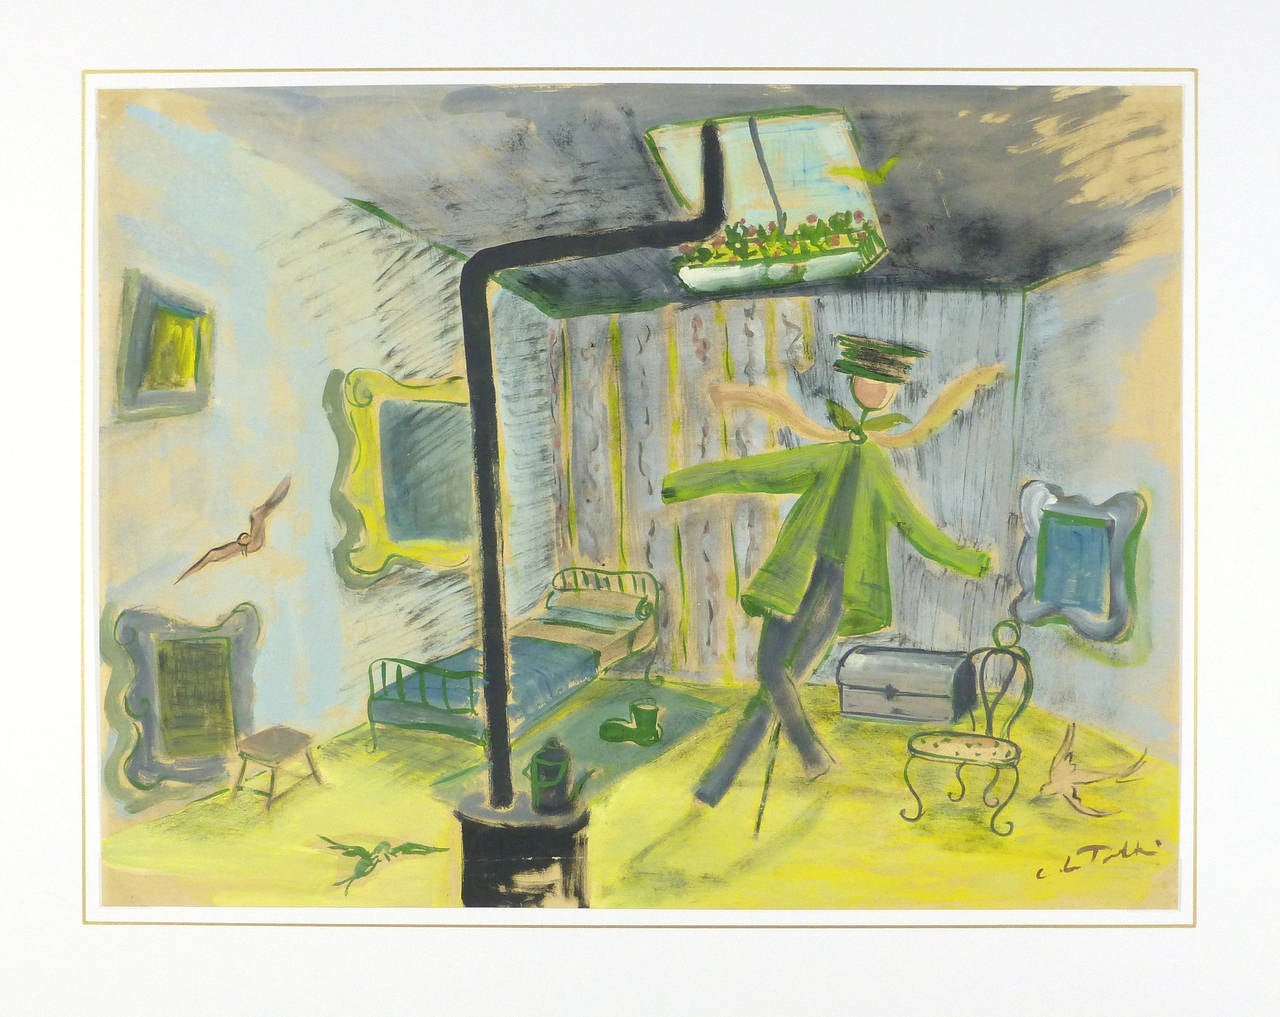 Poetisch inspirierte Darstellung eines kleinen Pariser Dachgeschosszimmers mit Gemälden, Vögeln und einer lebendigen Vogelscheuche aus Kleidung, 1950. Signiert unten rechts, Künstler unbekannt.

Einzigartiges Originalkunstwerk auf Papier, das auf